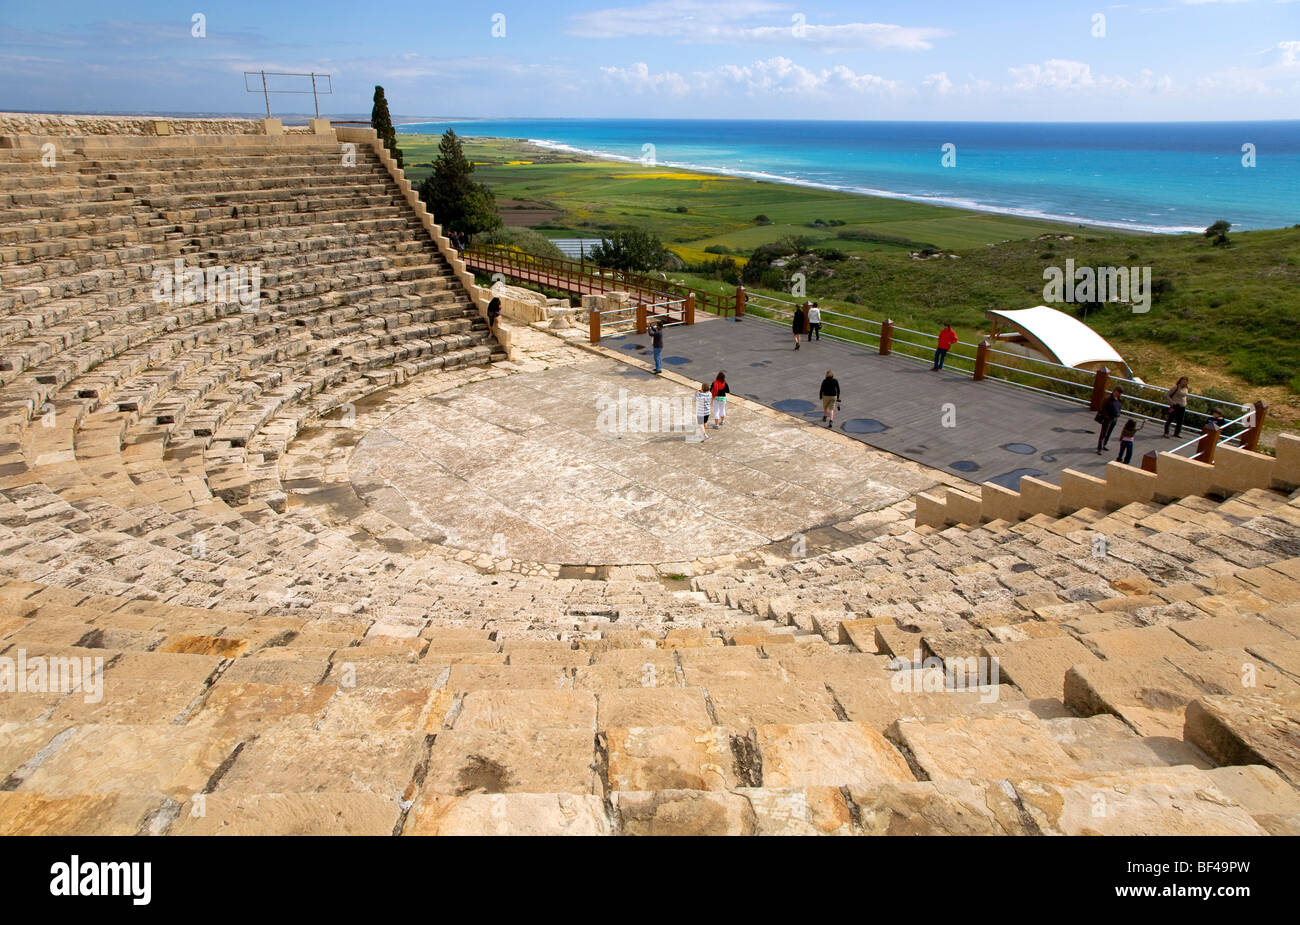 Il sito archeologico di Kourion, antico teatro 2th. secolo D.C., Sito Patrimonio Mondiale dell'UNESCO, Paphos, Cipro, Grecia, Europa Foto Stock